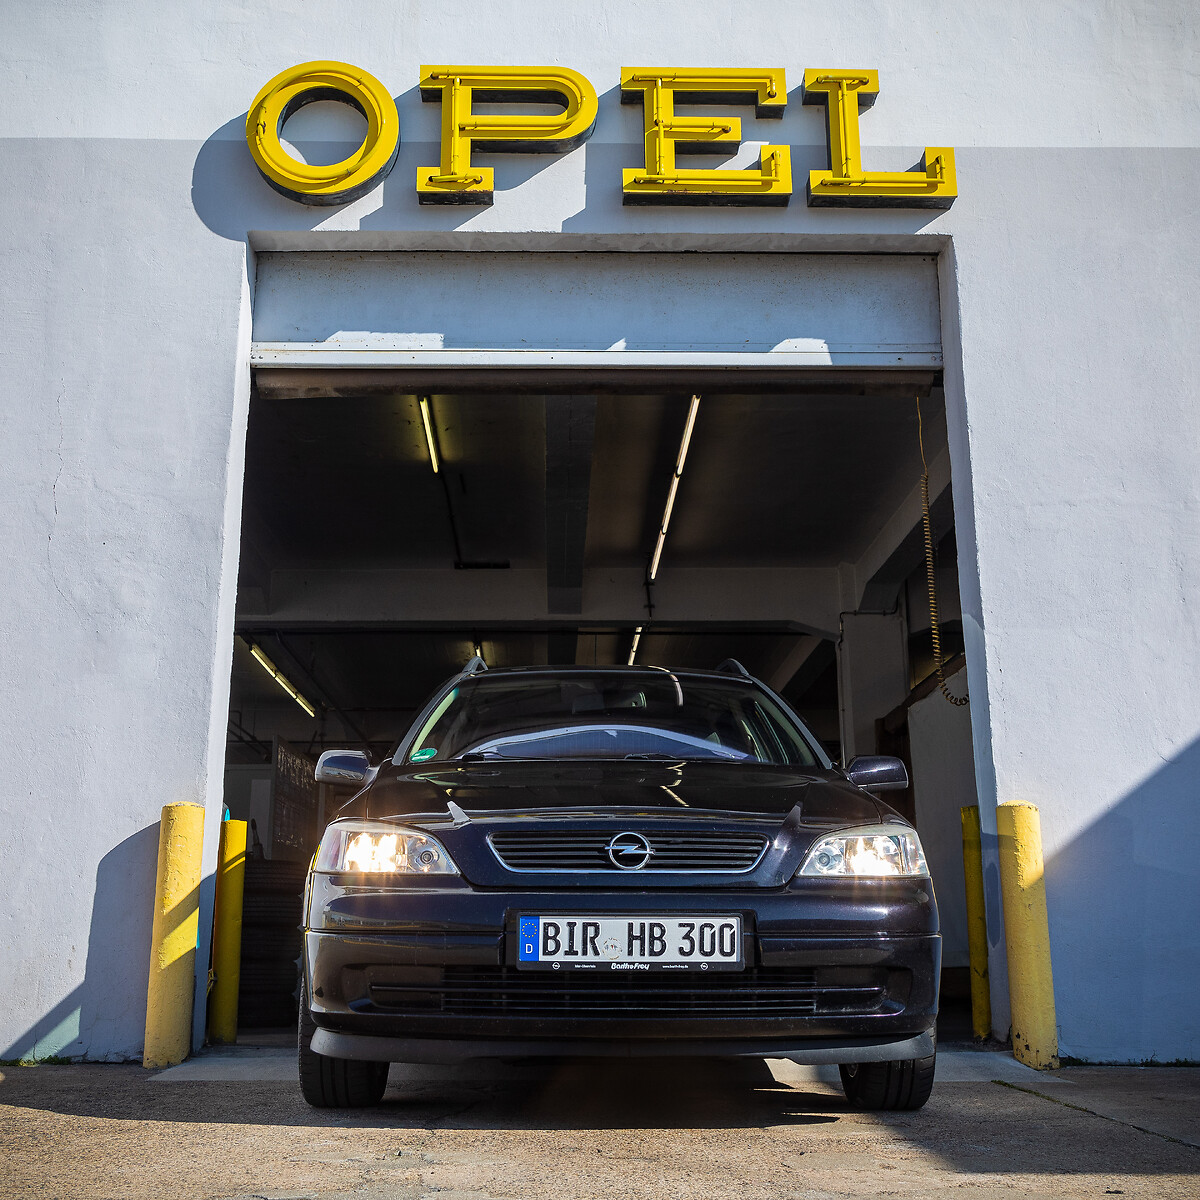 Opel Astra : évolutions techniques plus que plastiques - Challenges